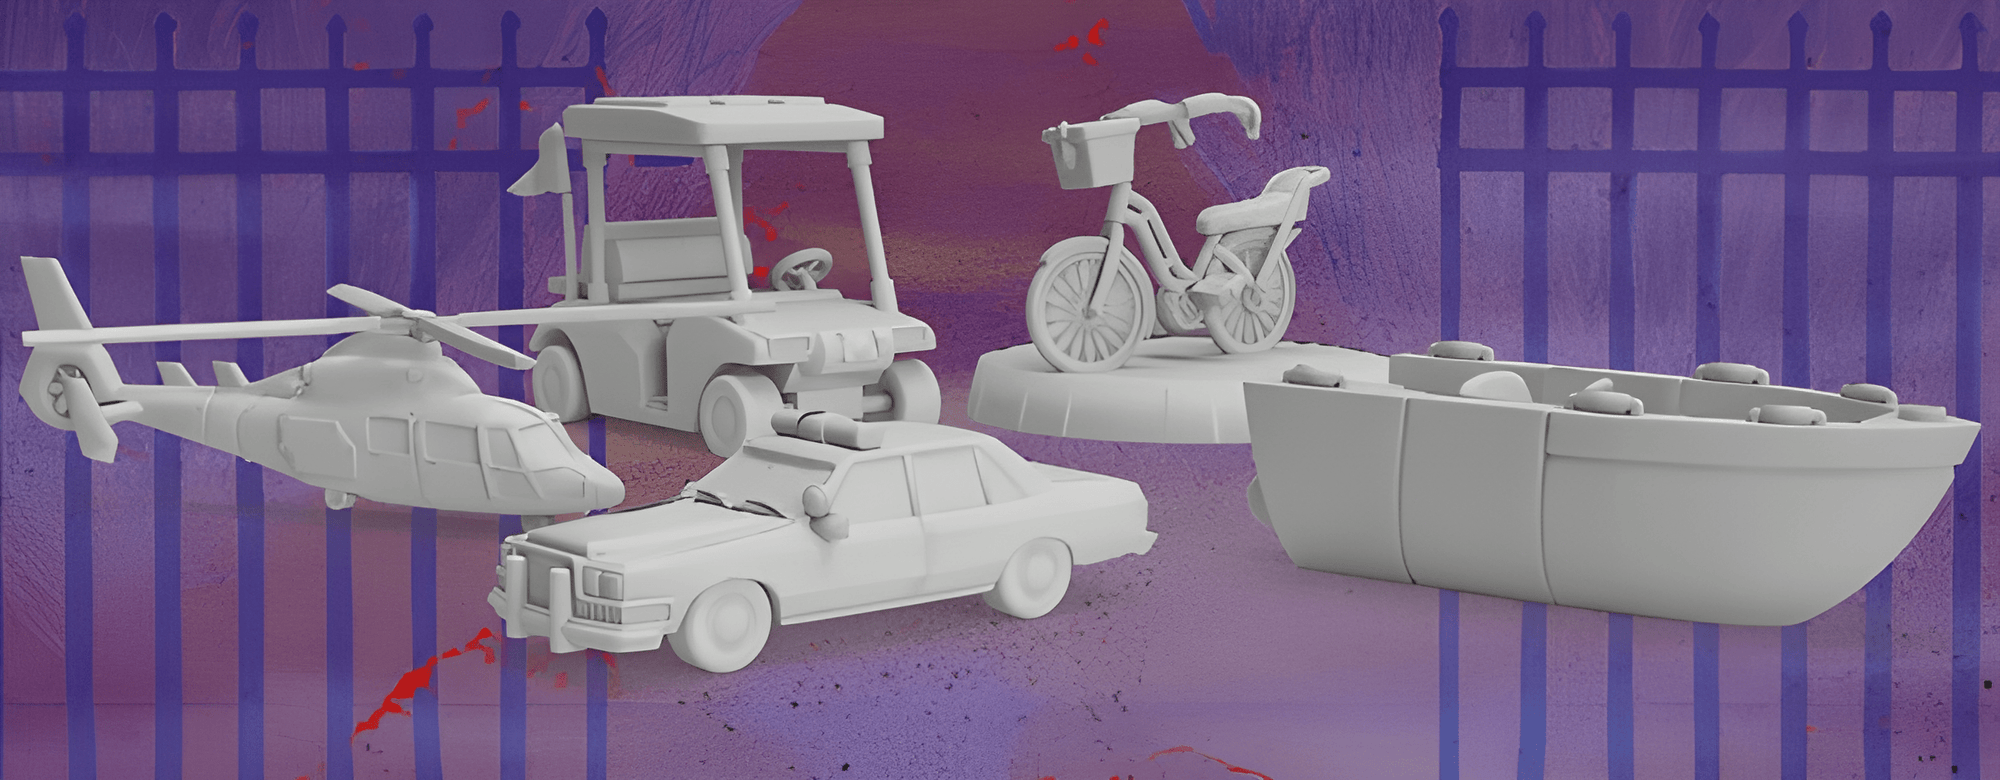 Final Girl: Vehicle Miniature Set [Series 1] (Kickstarter Pre-Order Special) Kickstarter Board Game Accessoire Van Ryder Games KS001081P